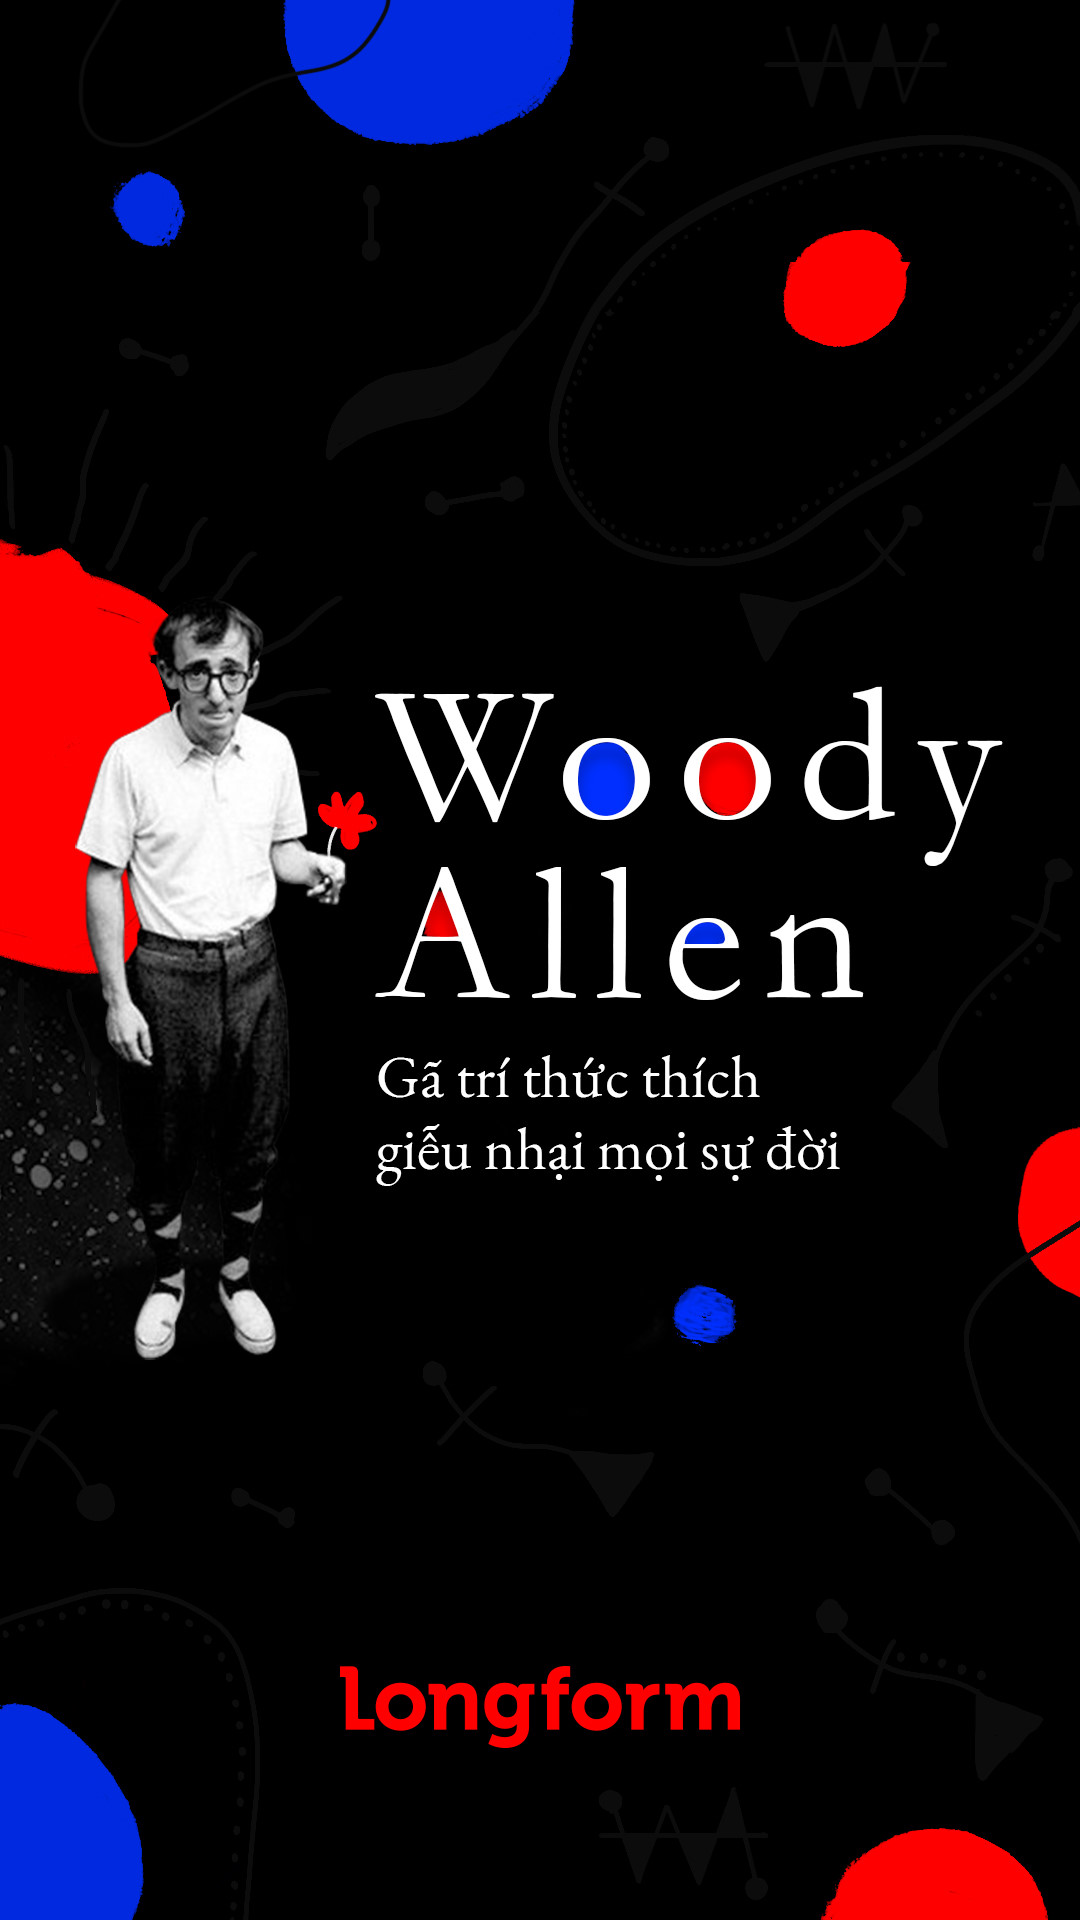 Woody Allen - ga tri thuc thich gieu nhai moi su doi hinh anh 1